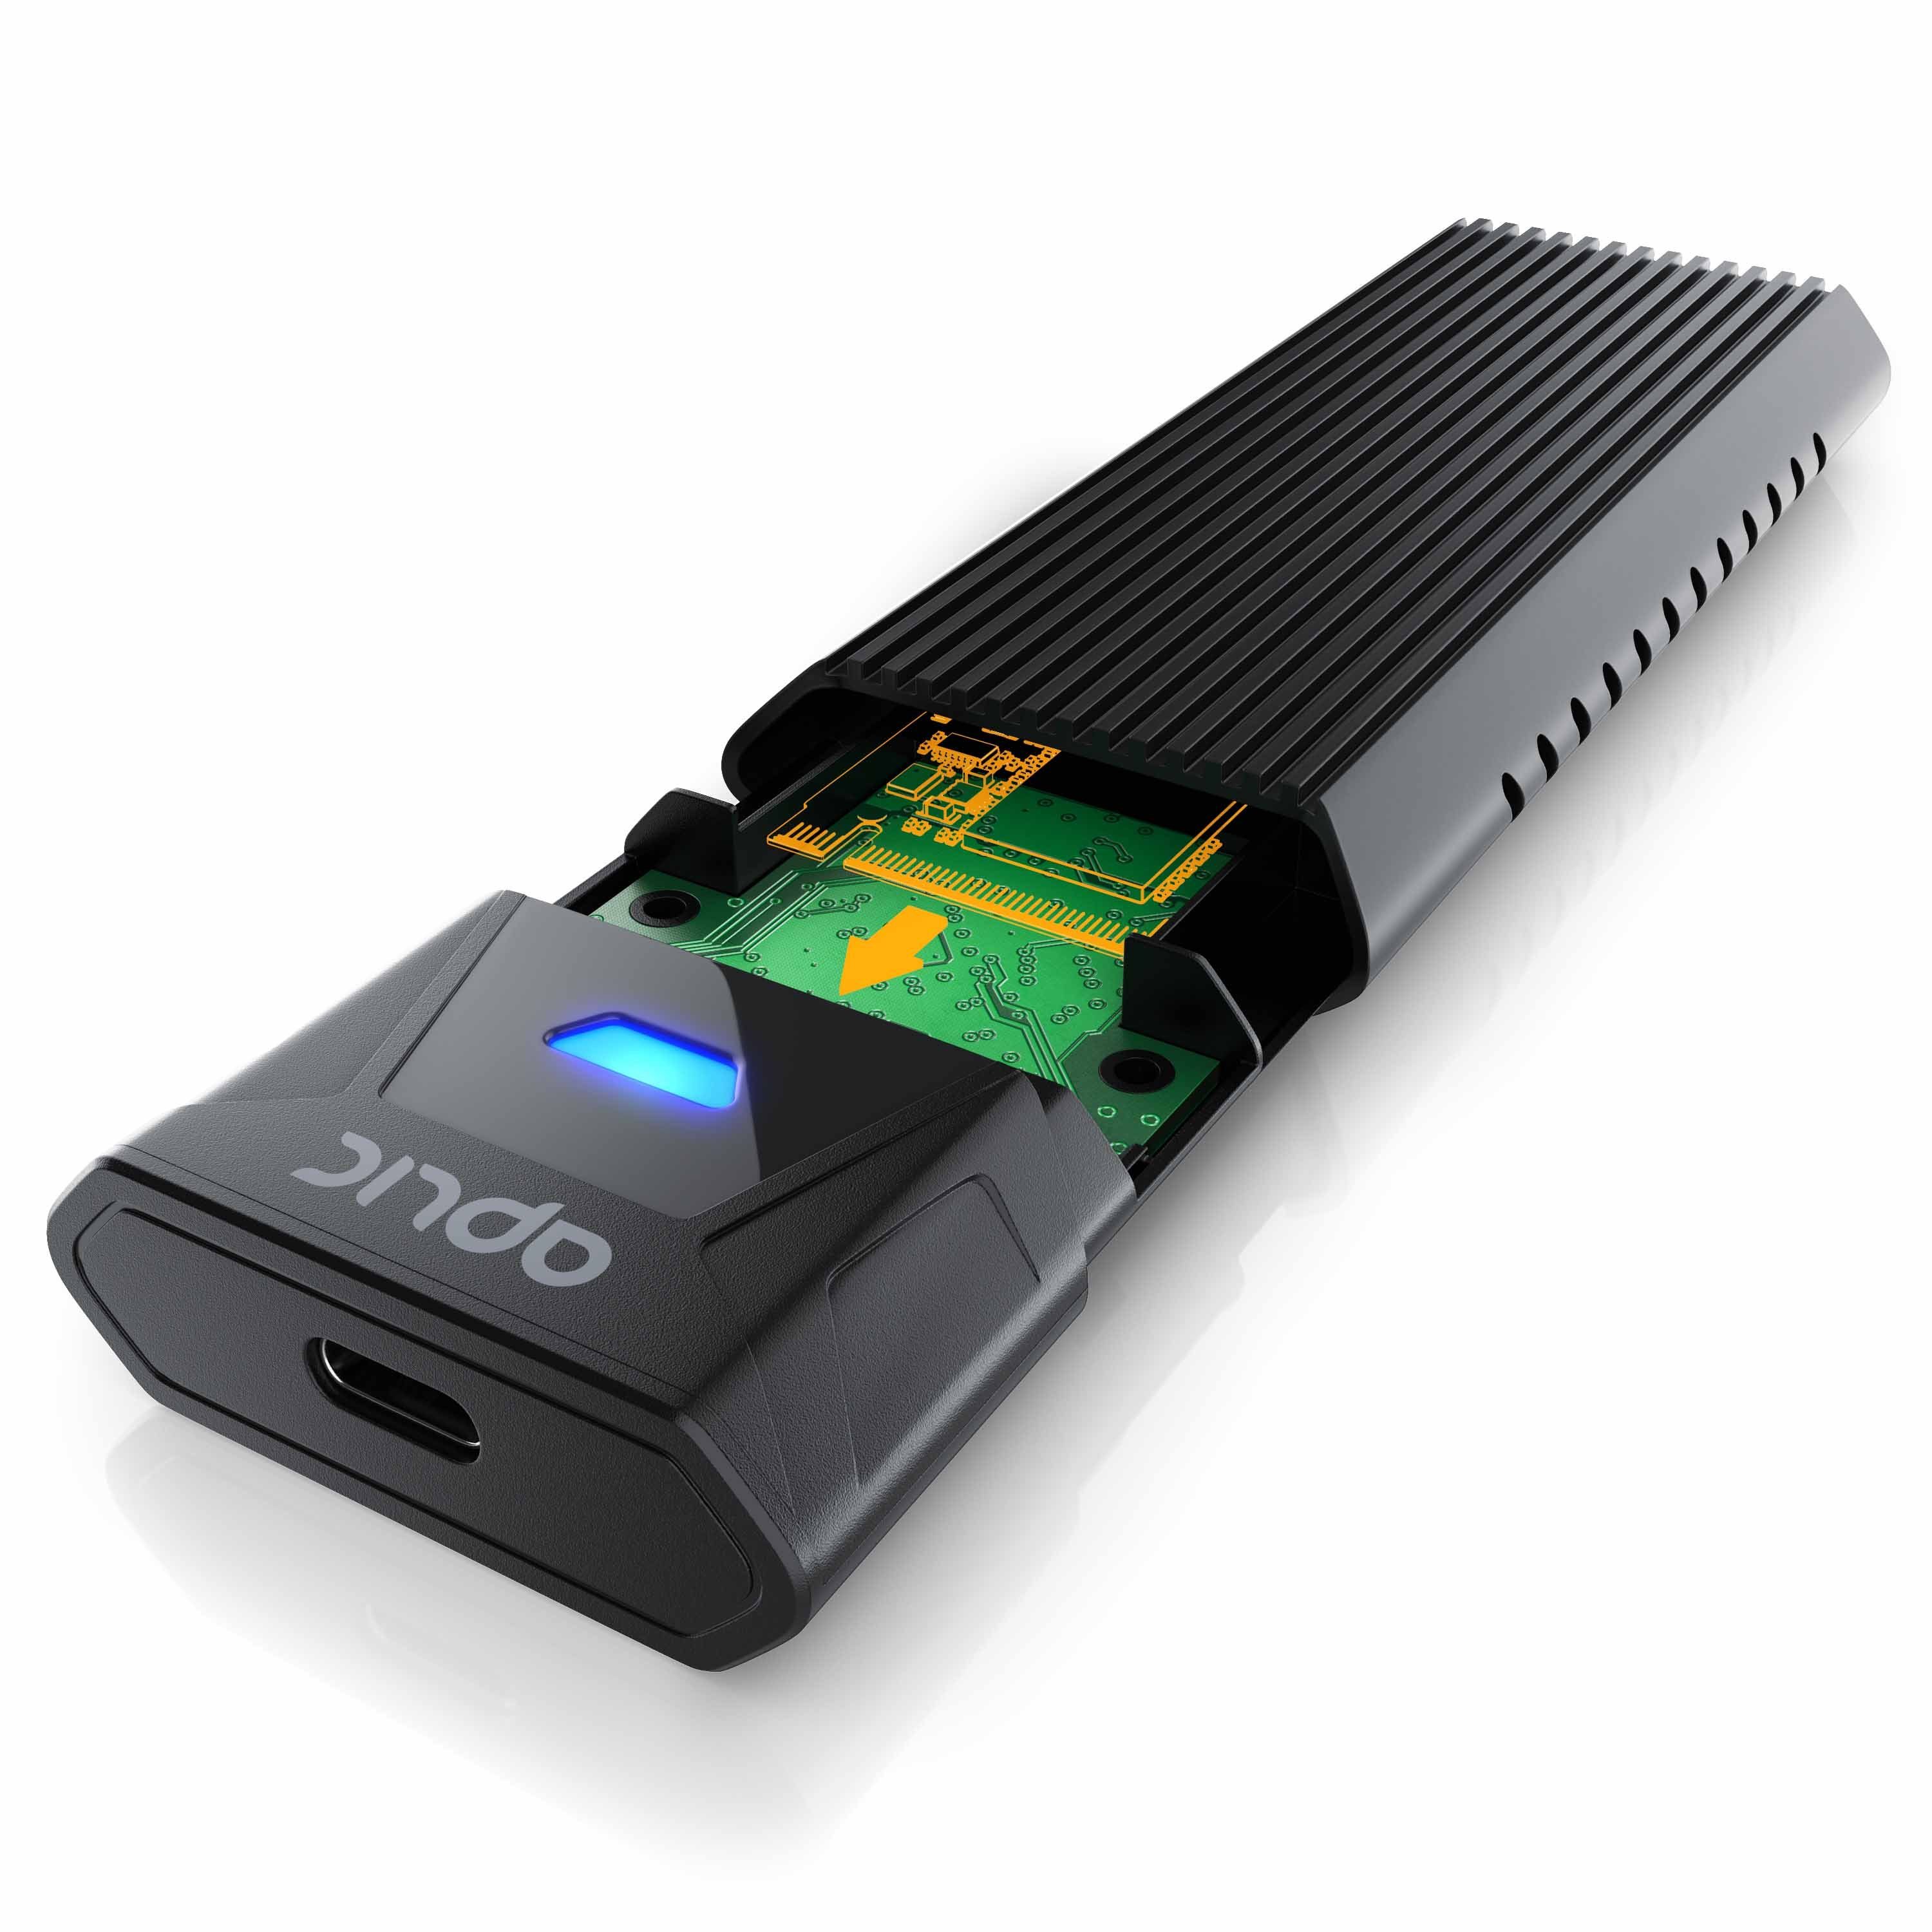 Aplic Festplatten-Gehäuse, M.2 NVMe Gehäuse USB 3.2 Gen 2 auf PCIe 3.0 und  SATA kompatibel mit 2230, 2242, 2260, 2280 online kaufen | OTTO